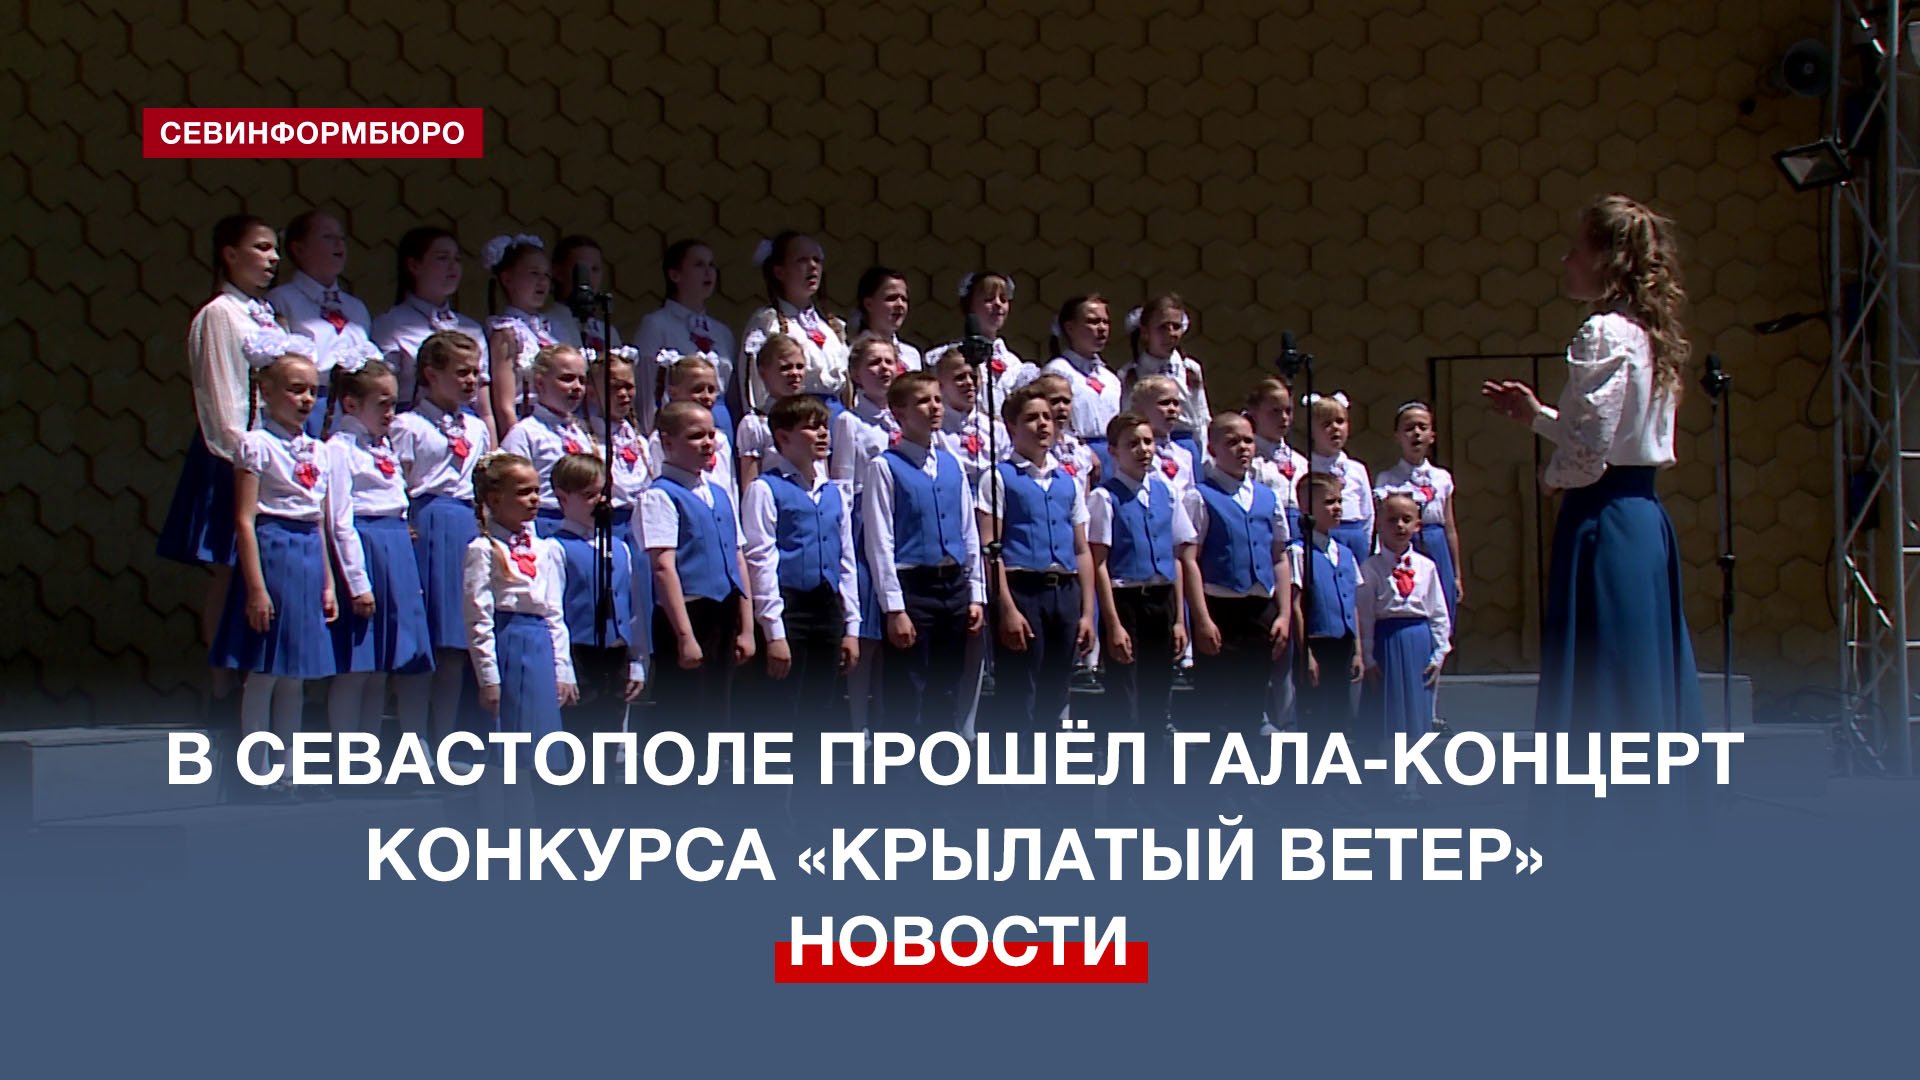 26 детских коллективов Севастополя приняли участие в хоровом конкурсе «Крылатый ветер»